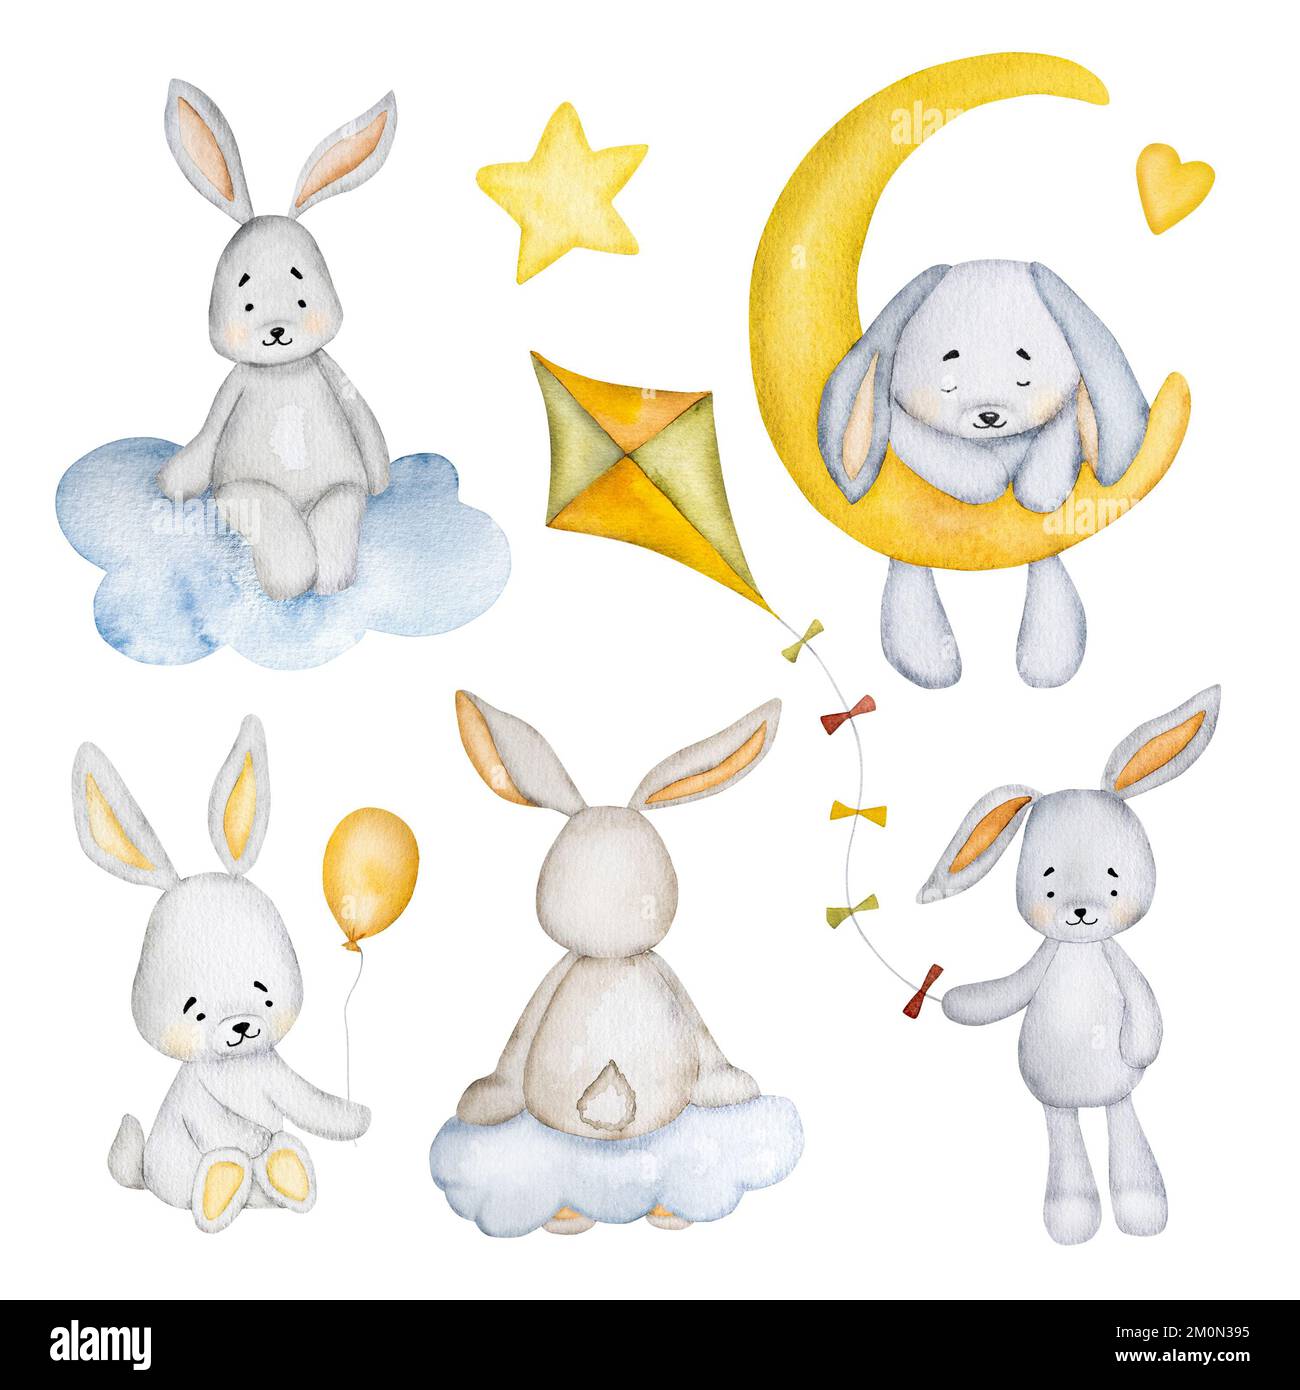 Jolis tableaux de lapin aquarelle pour carte postale Banque D'Images